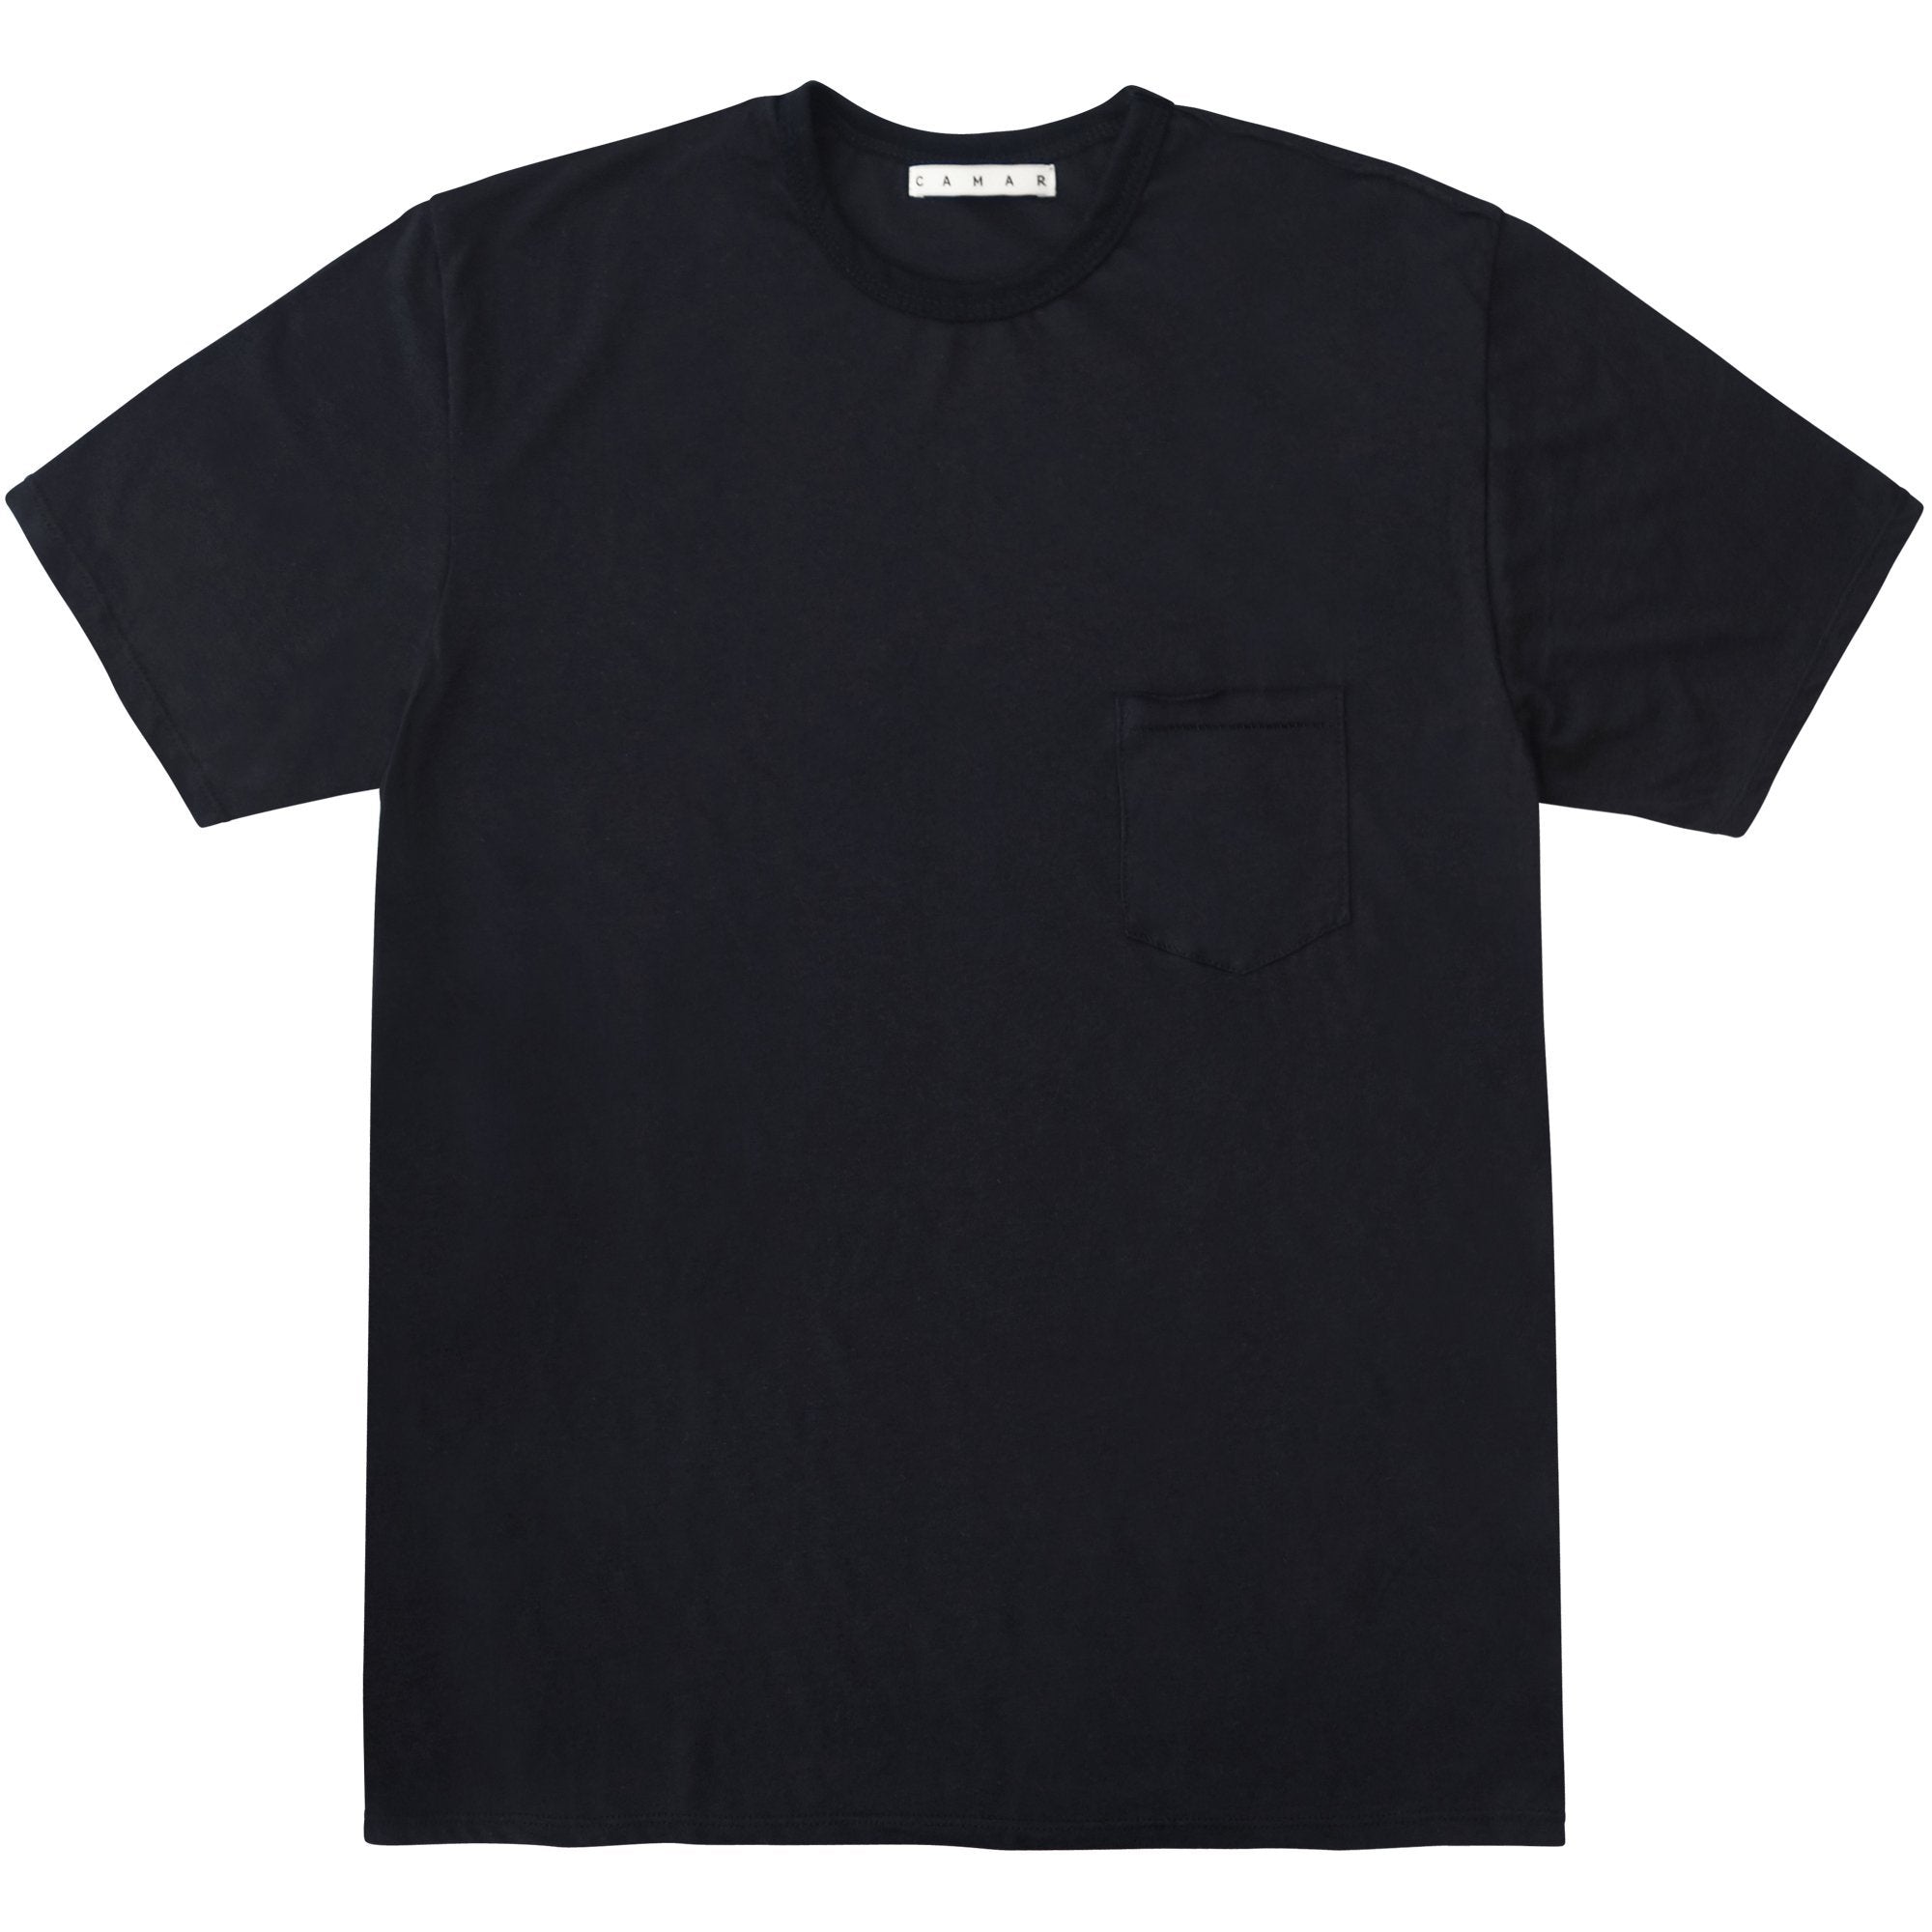 Black Slub Pocket T-Shirt